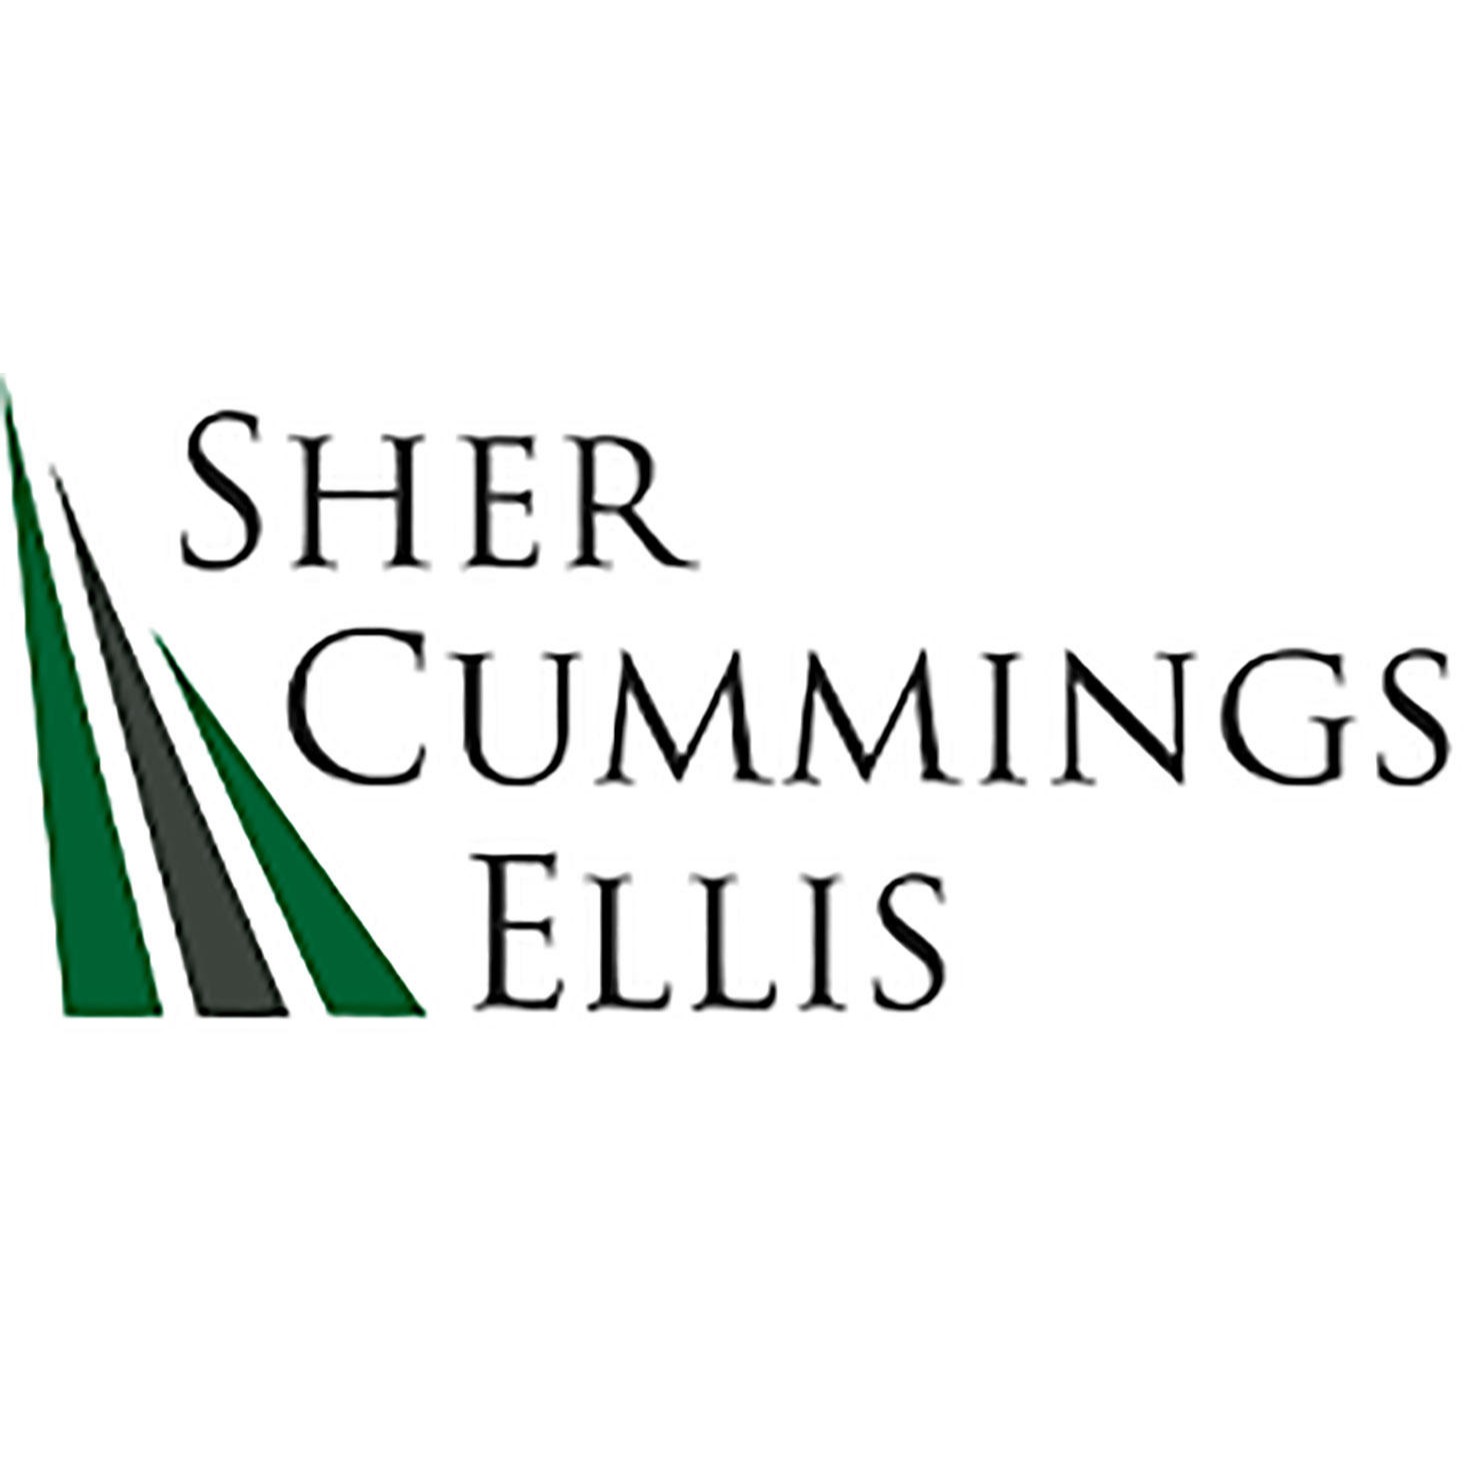 Sher, Cummings and Ellis - Arlington, VA 22203 - (703)525-1200 | ShowMeLocal.com